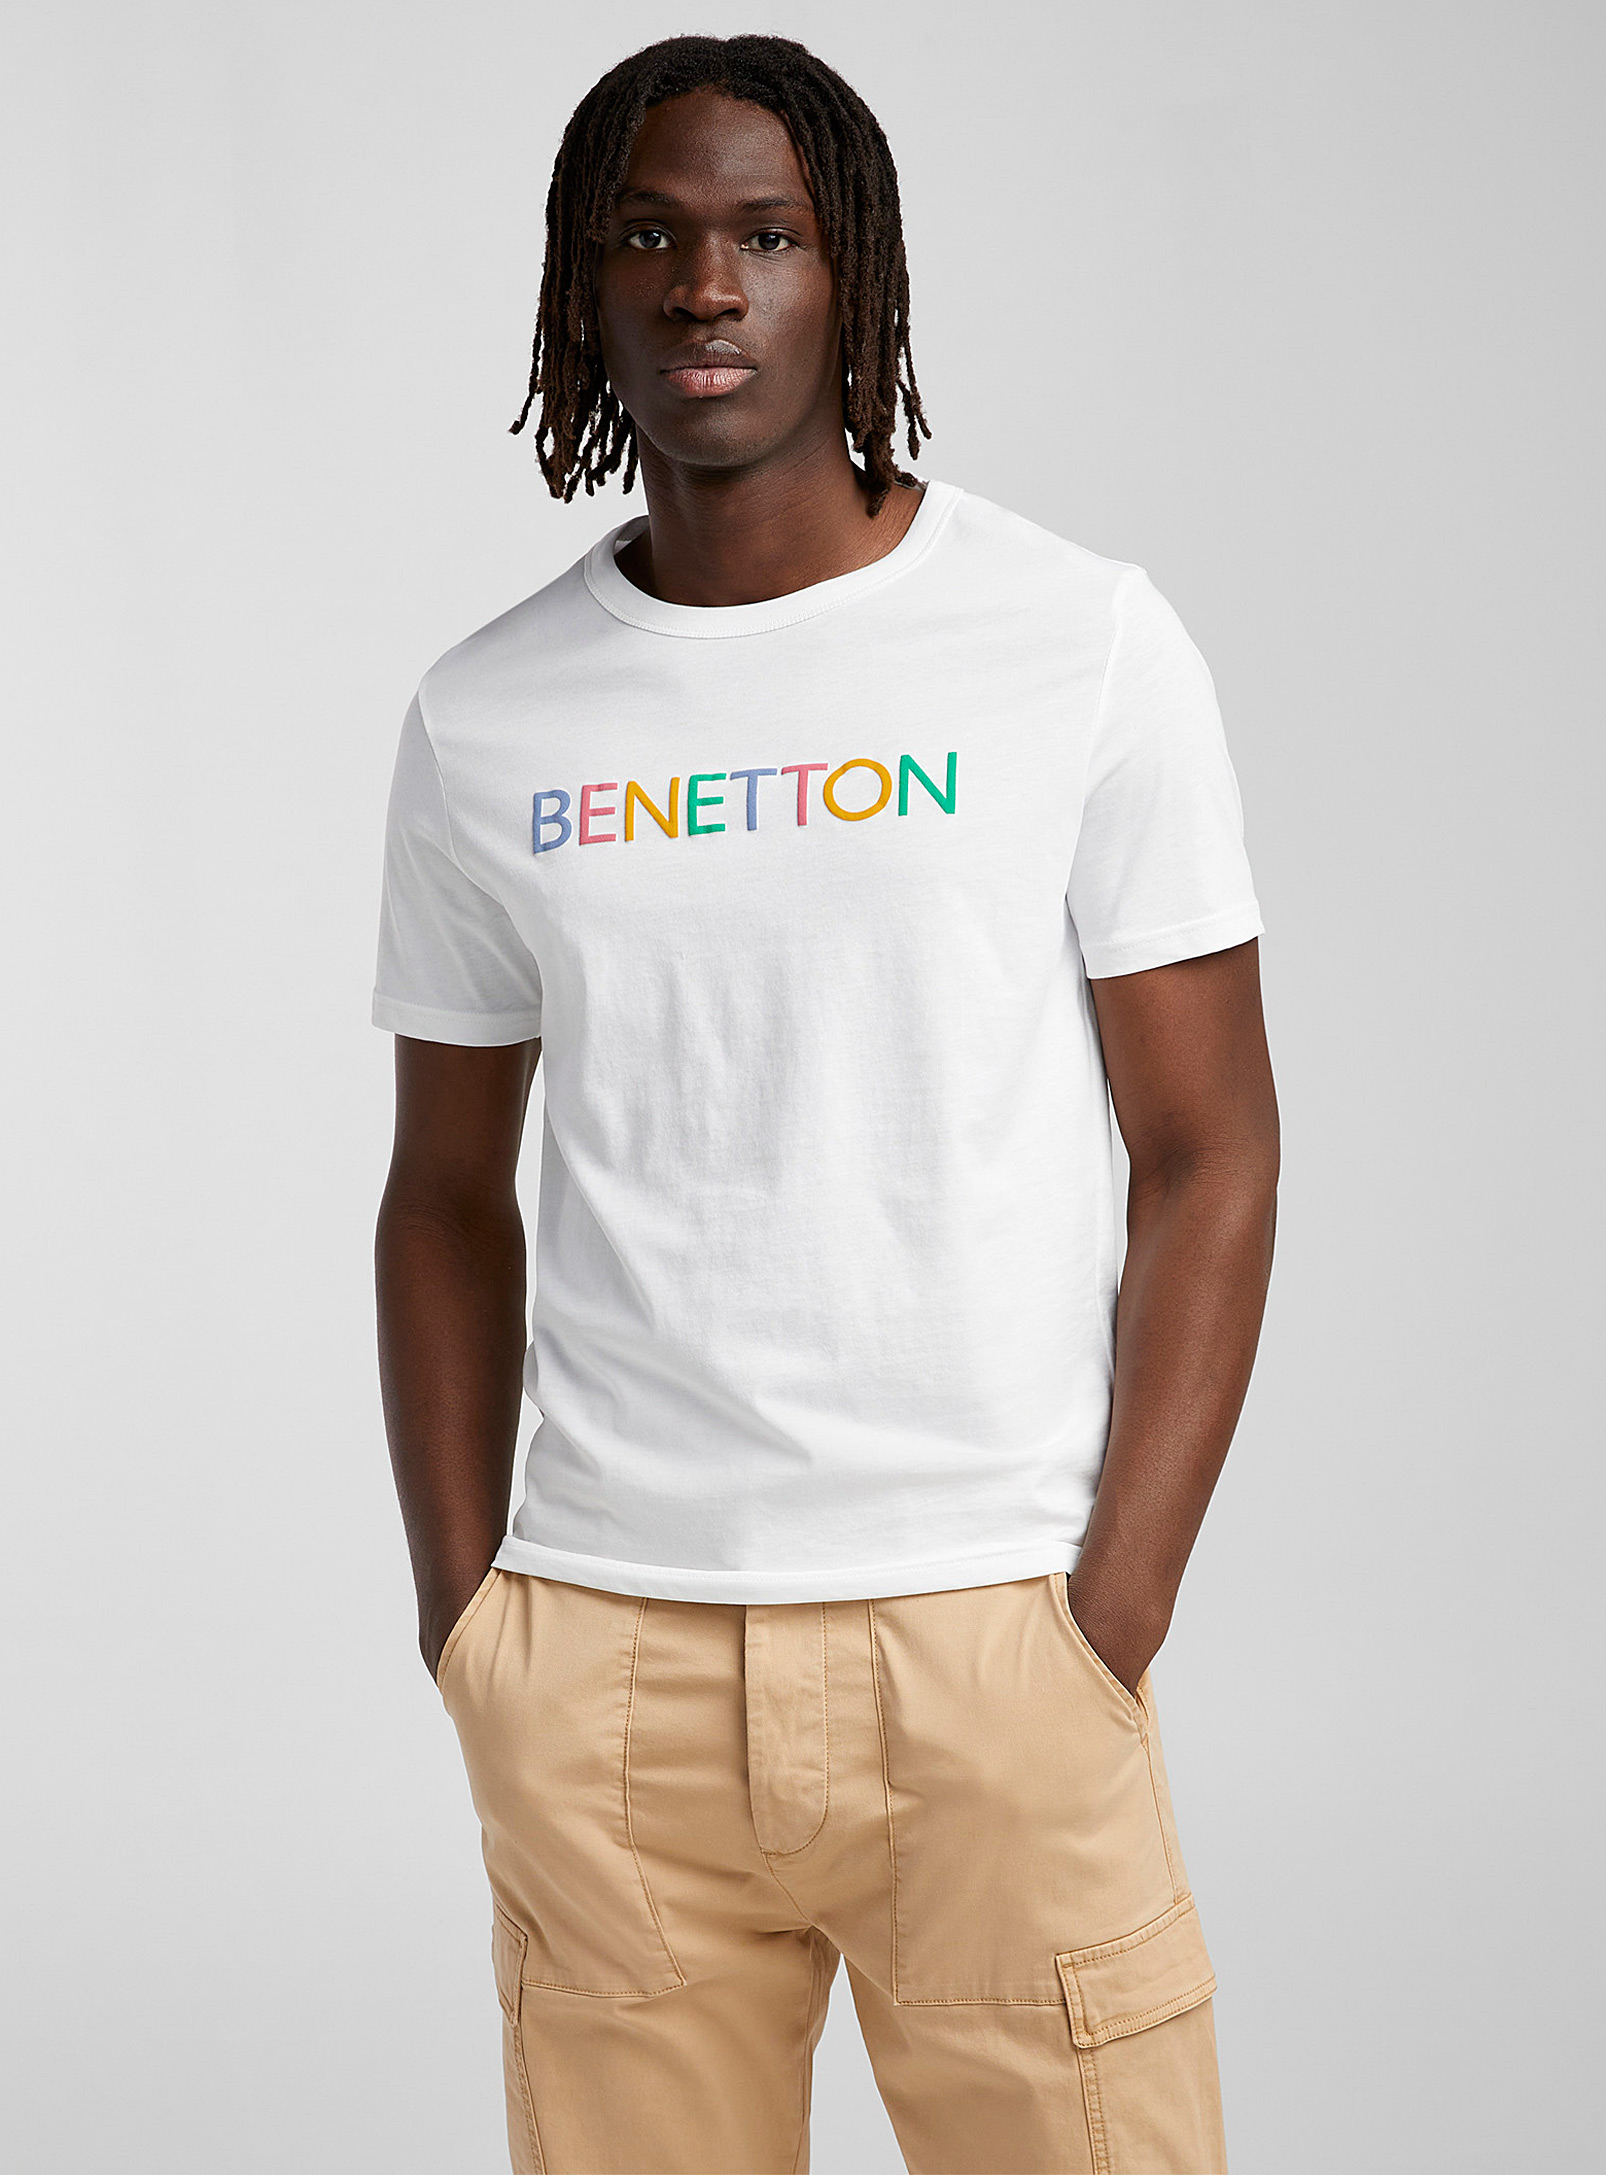 United Colors of Benetton - Le t-shirt signature colorée